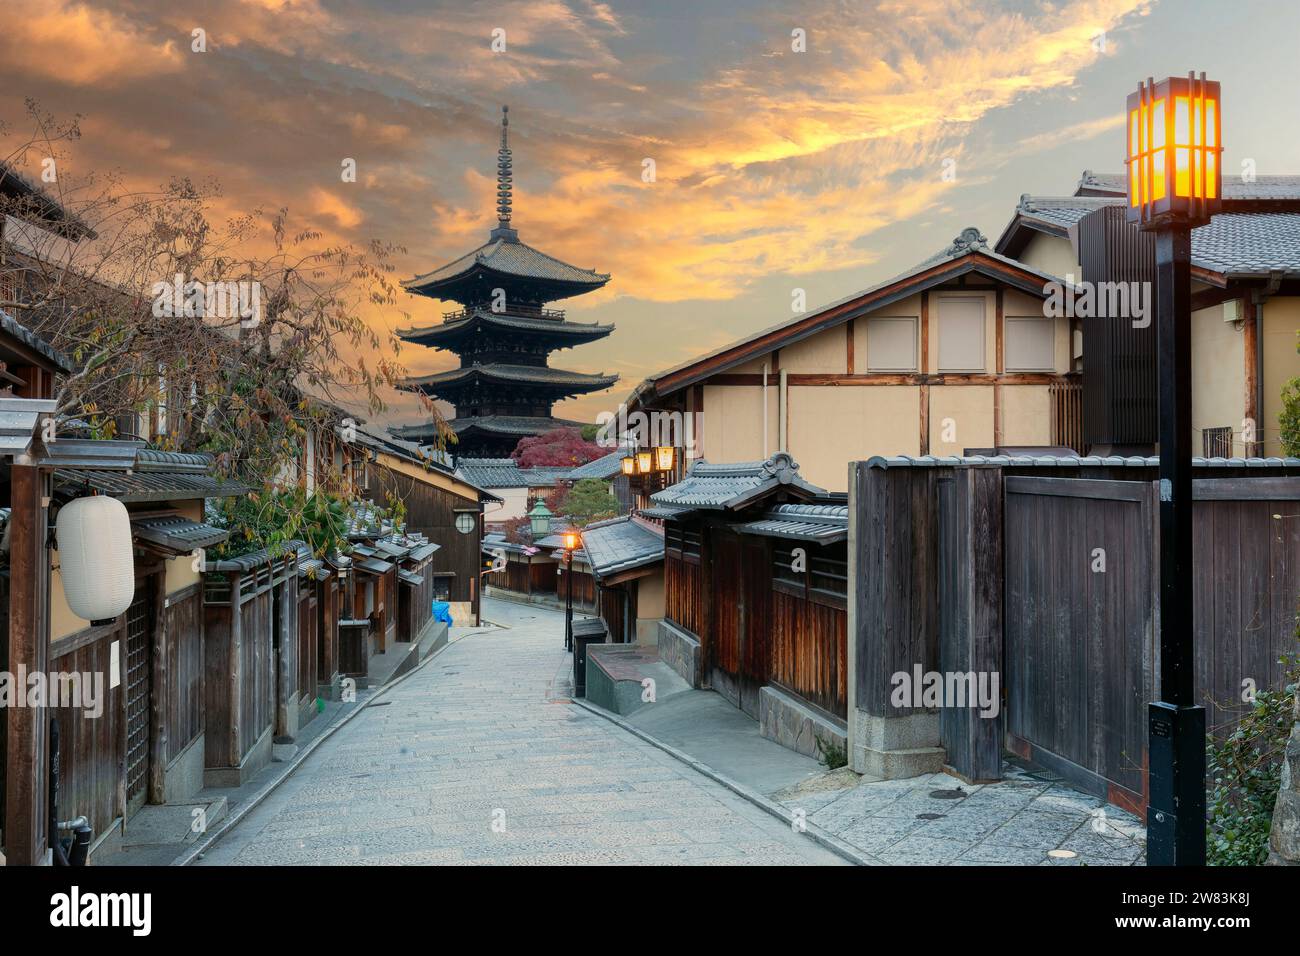 La mattina presto a Gion Kyoto, pagoda di legno nella città vecchia di Kyoto in Giappone Foto Stock